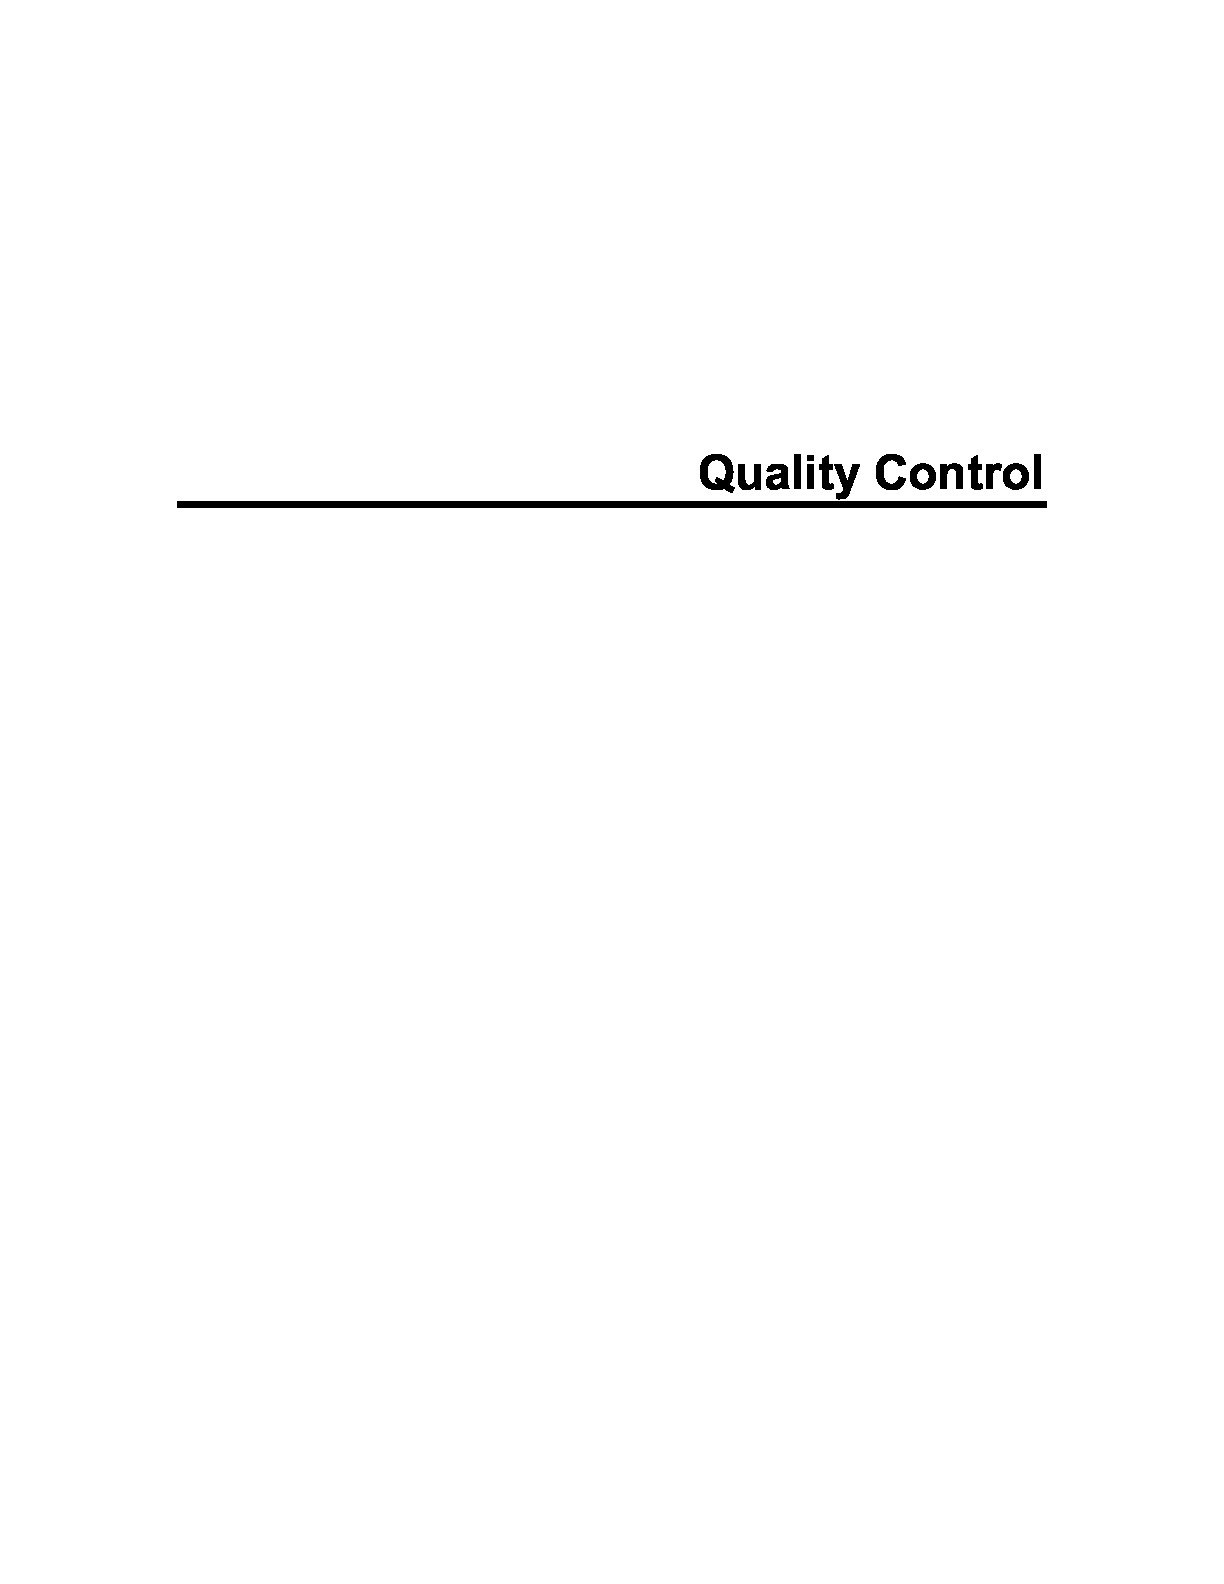 Minitab-Quality-Control